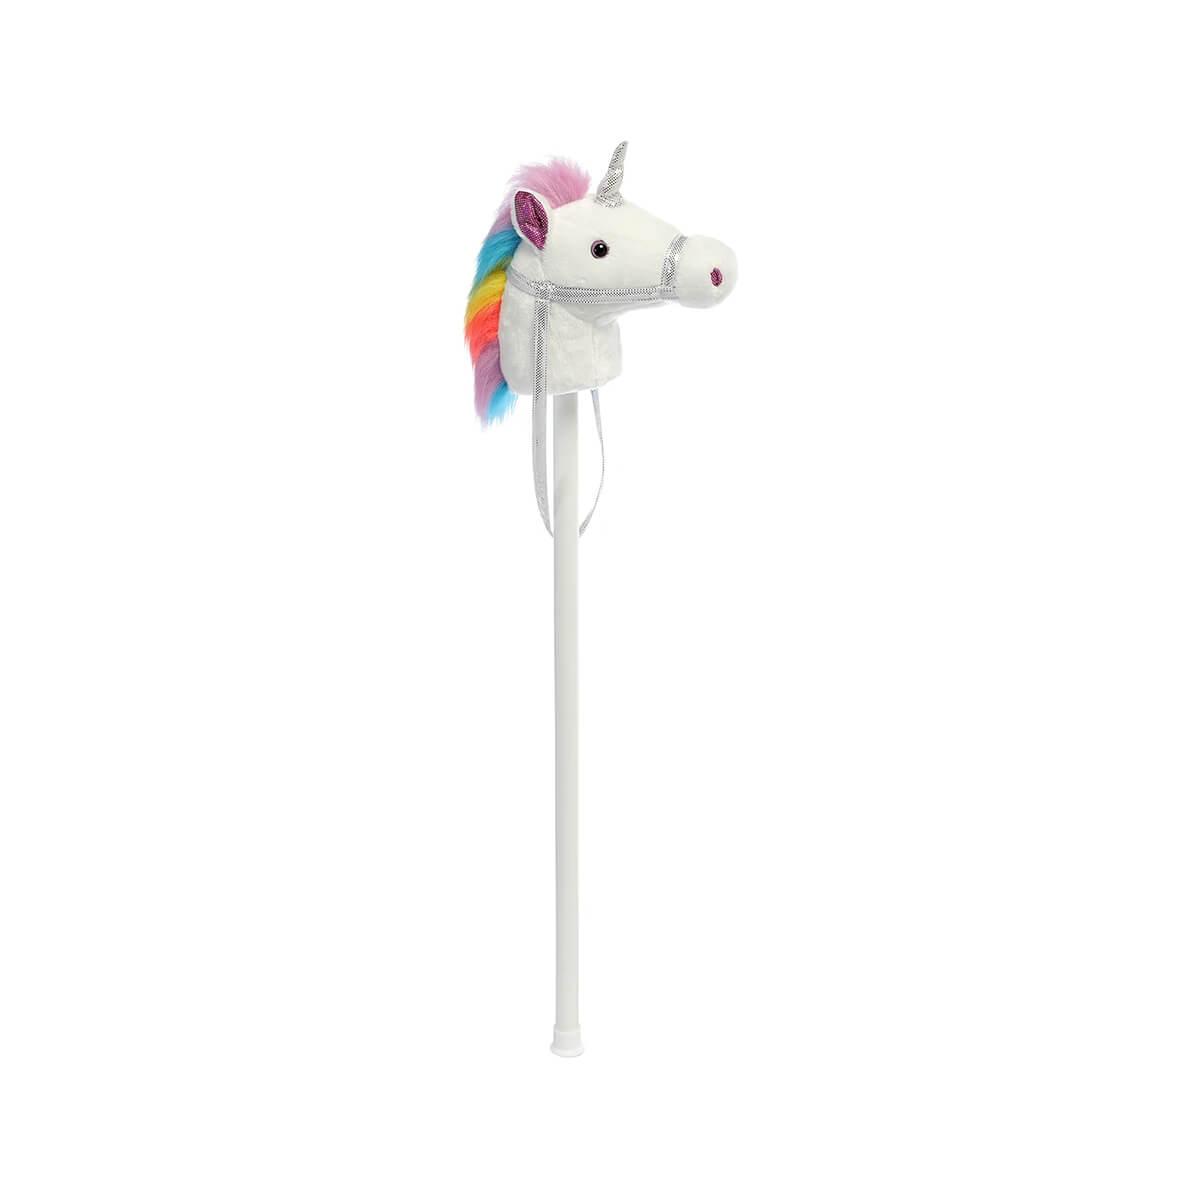  Giddy Up Rainbow Unicorn Toy